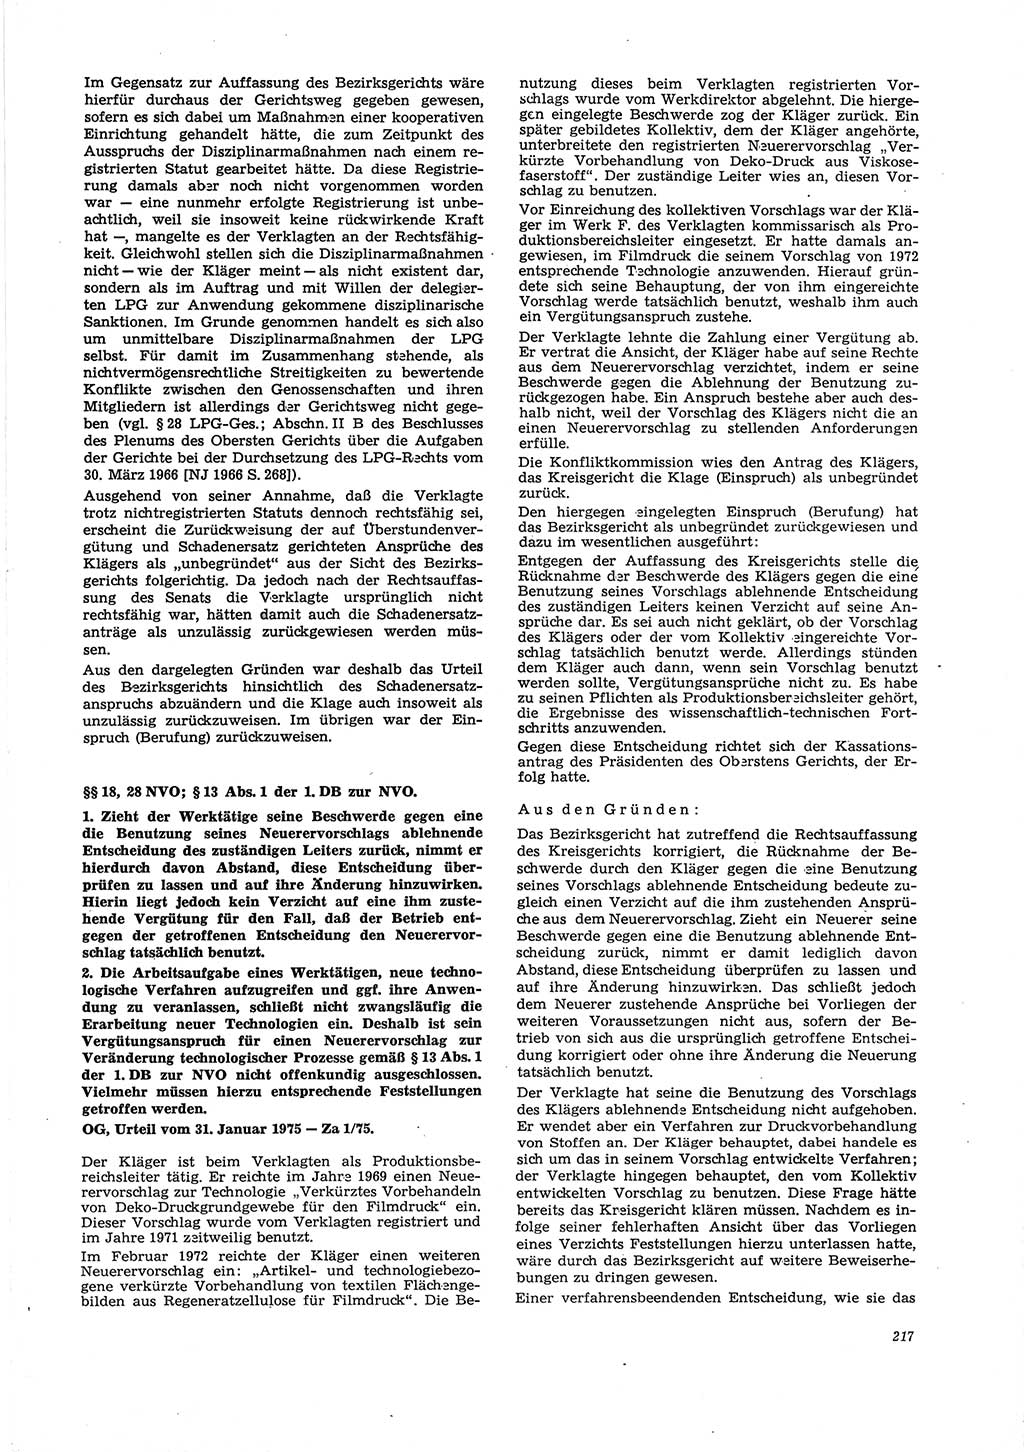 Neue Justiz (NJ), Zeitschrift für Recht und Rechtswissenschaft [Deutsche Demokratische Republik (DDR)], 29. Jahrgang 1975, Seite 217 (NJ DDR 1975, S. 217)